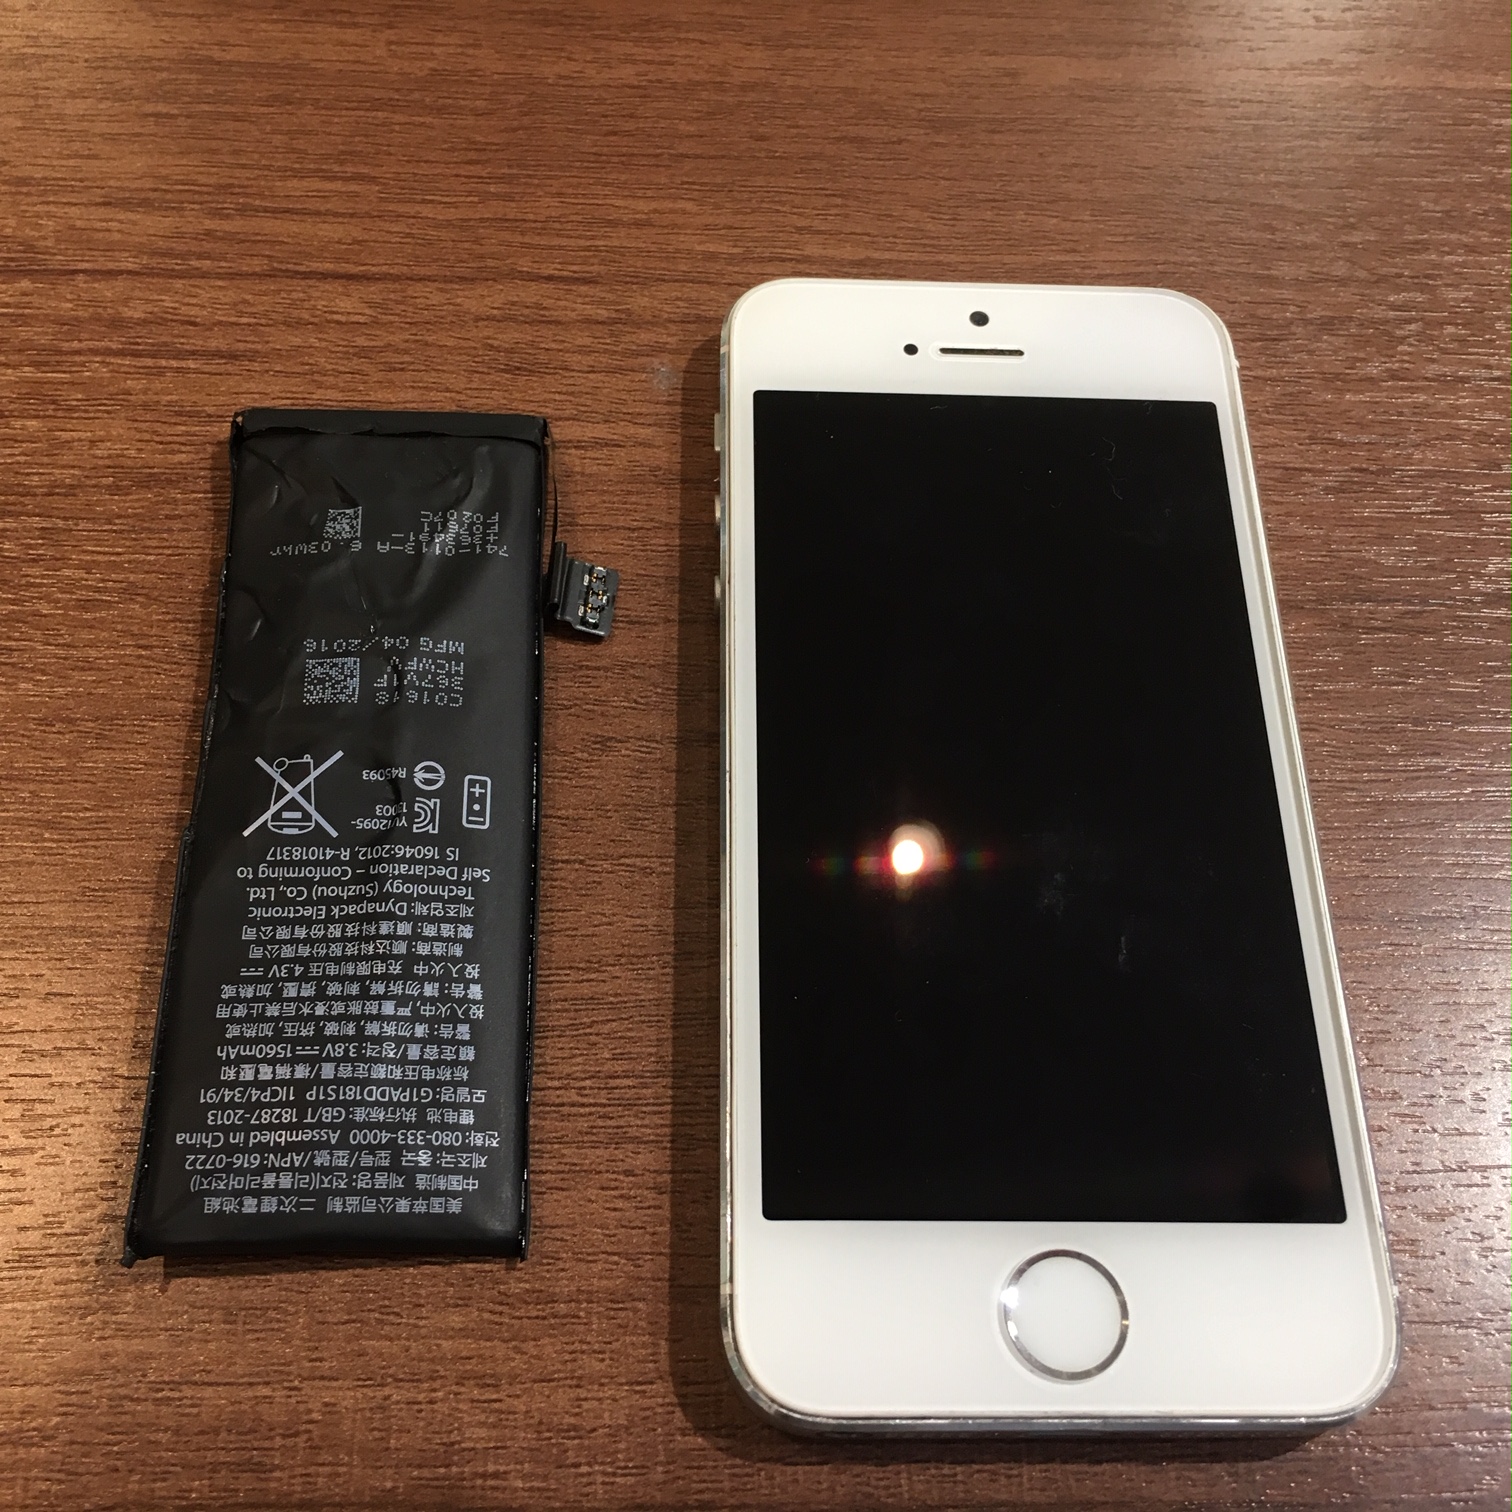 iPhone5sのバッテリー交換！尼崎でお探しなら迷わずスマートクールまで！データそのまま、最短１５分のスピード修理☆